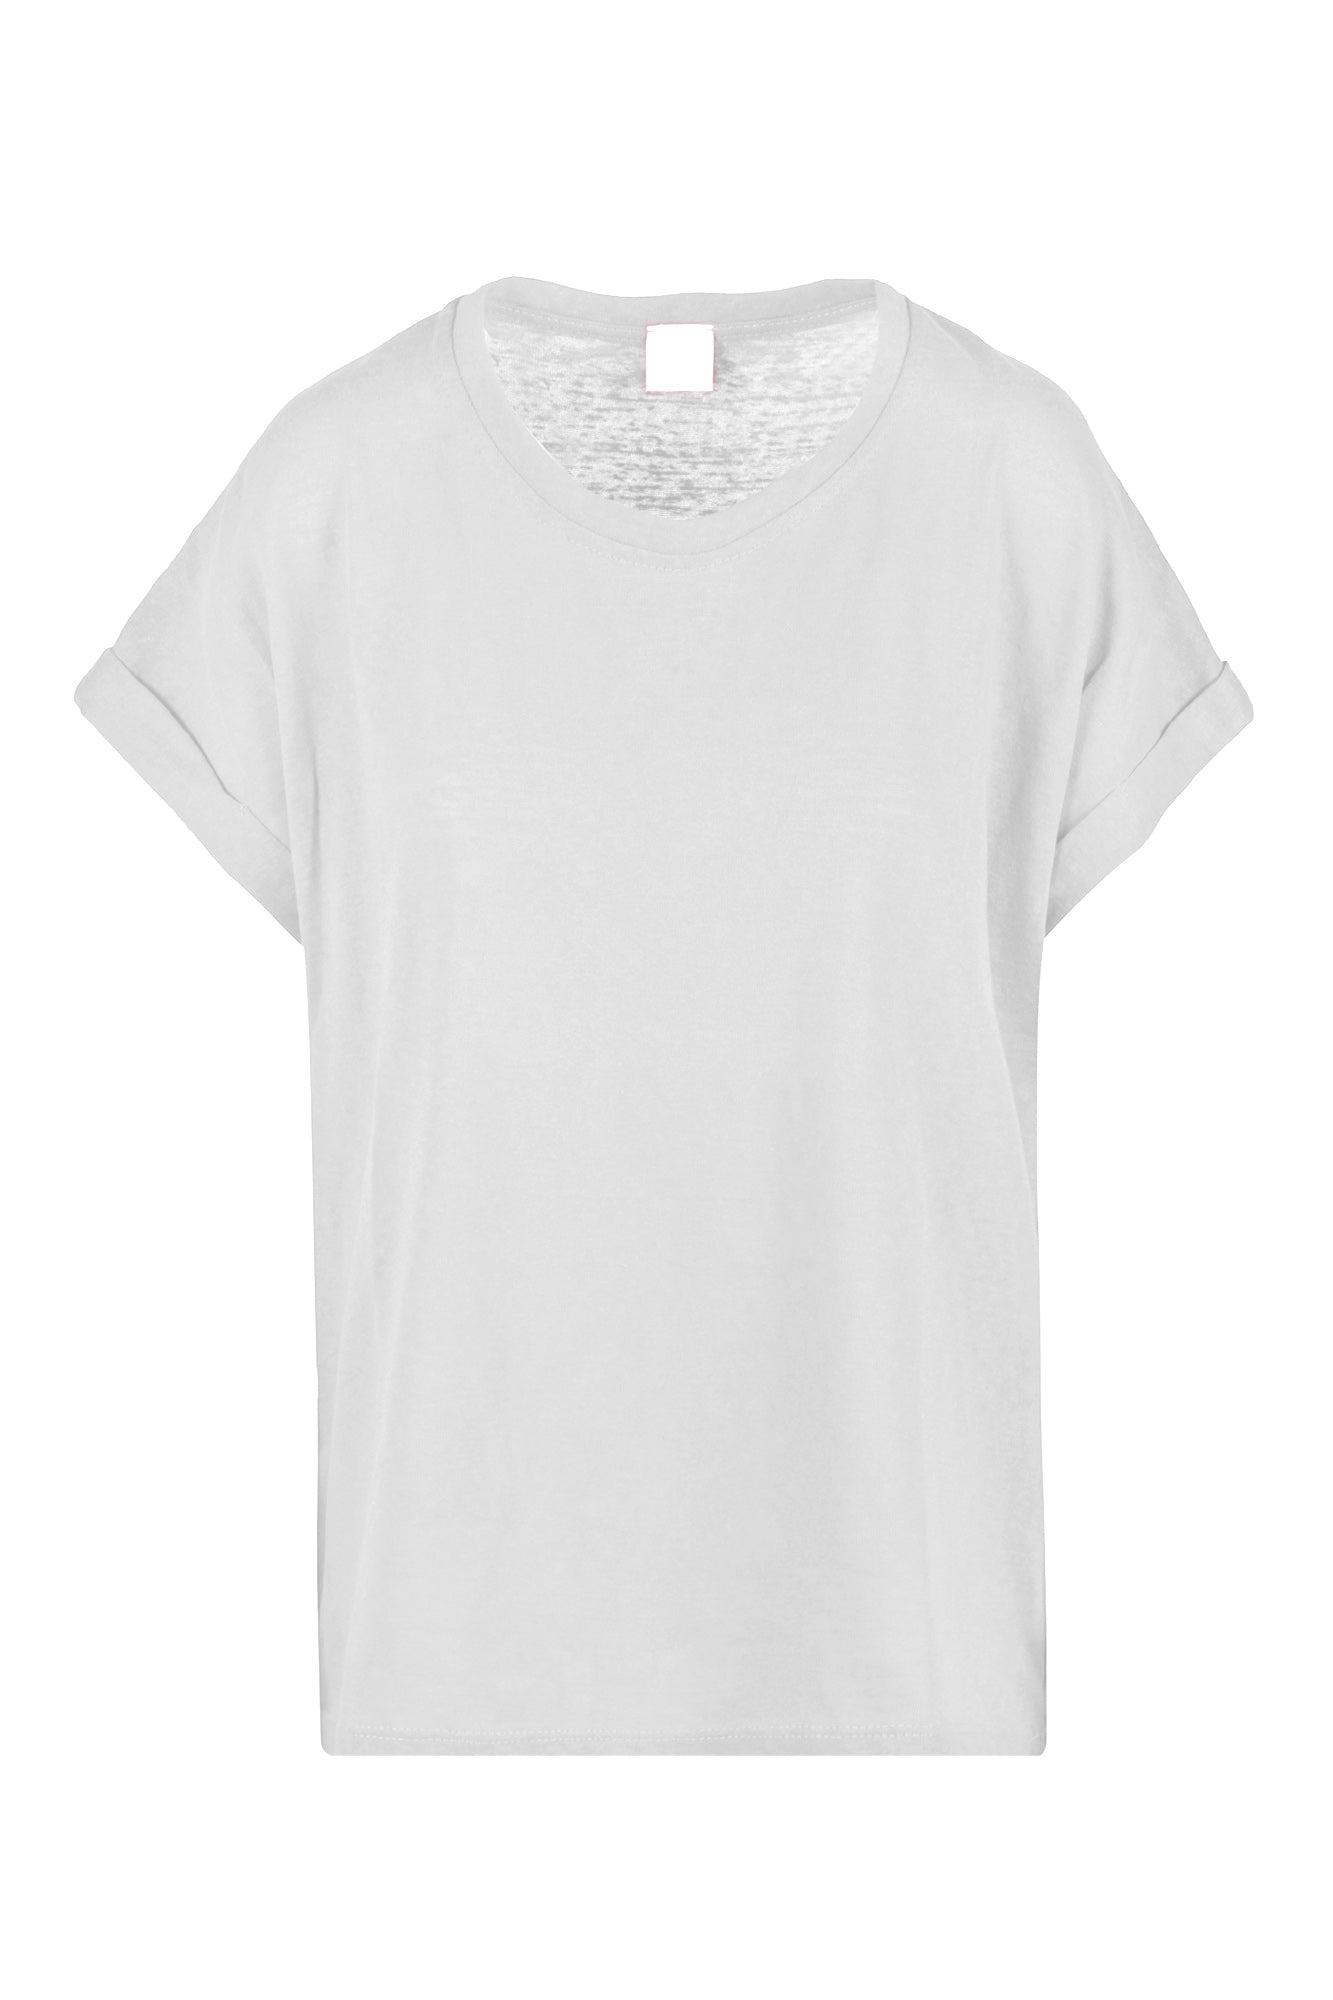 La Femme Blanche - T-shirt - 431585 - Panna